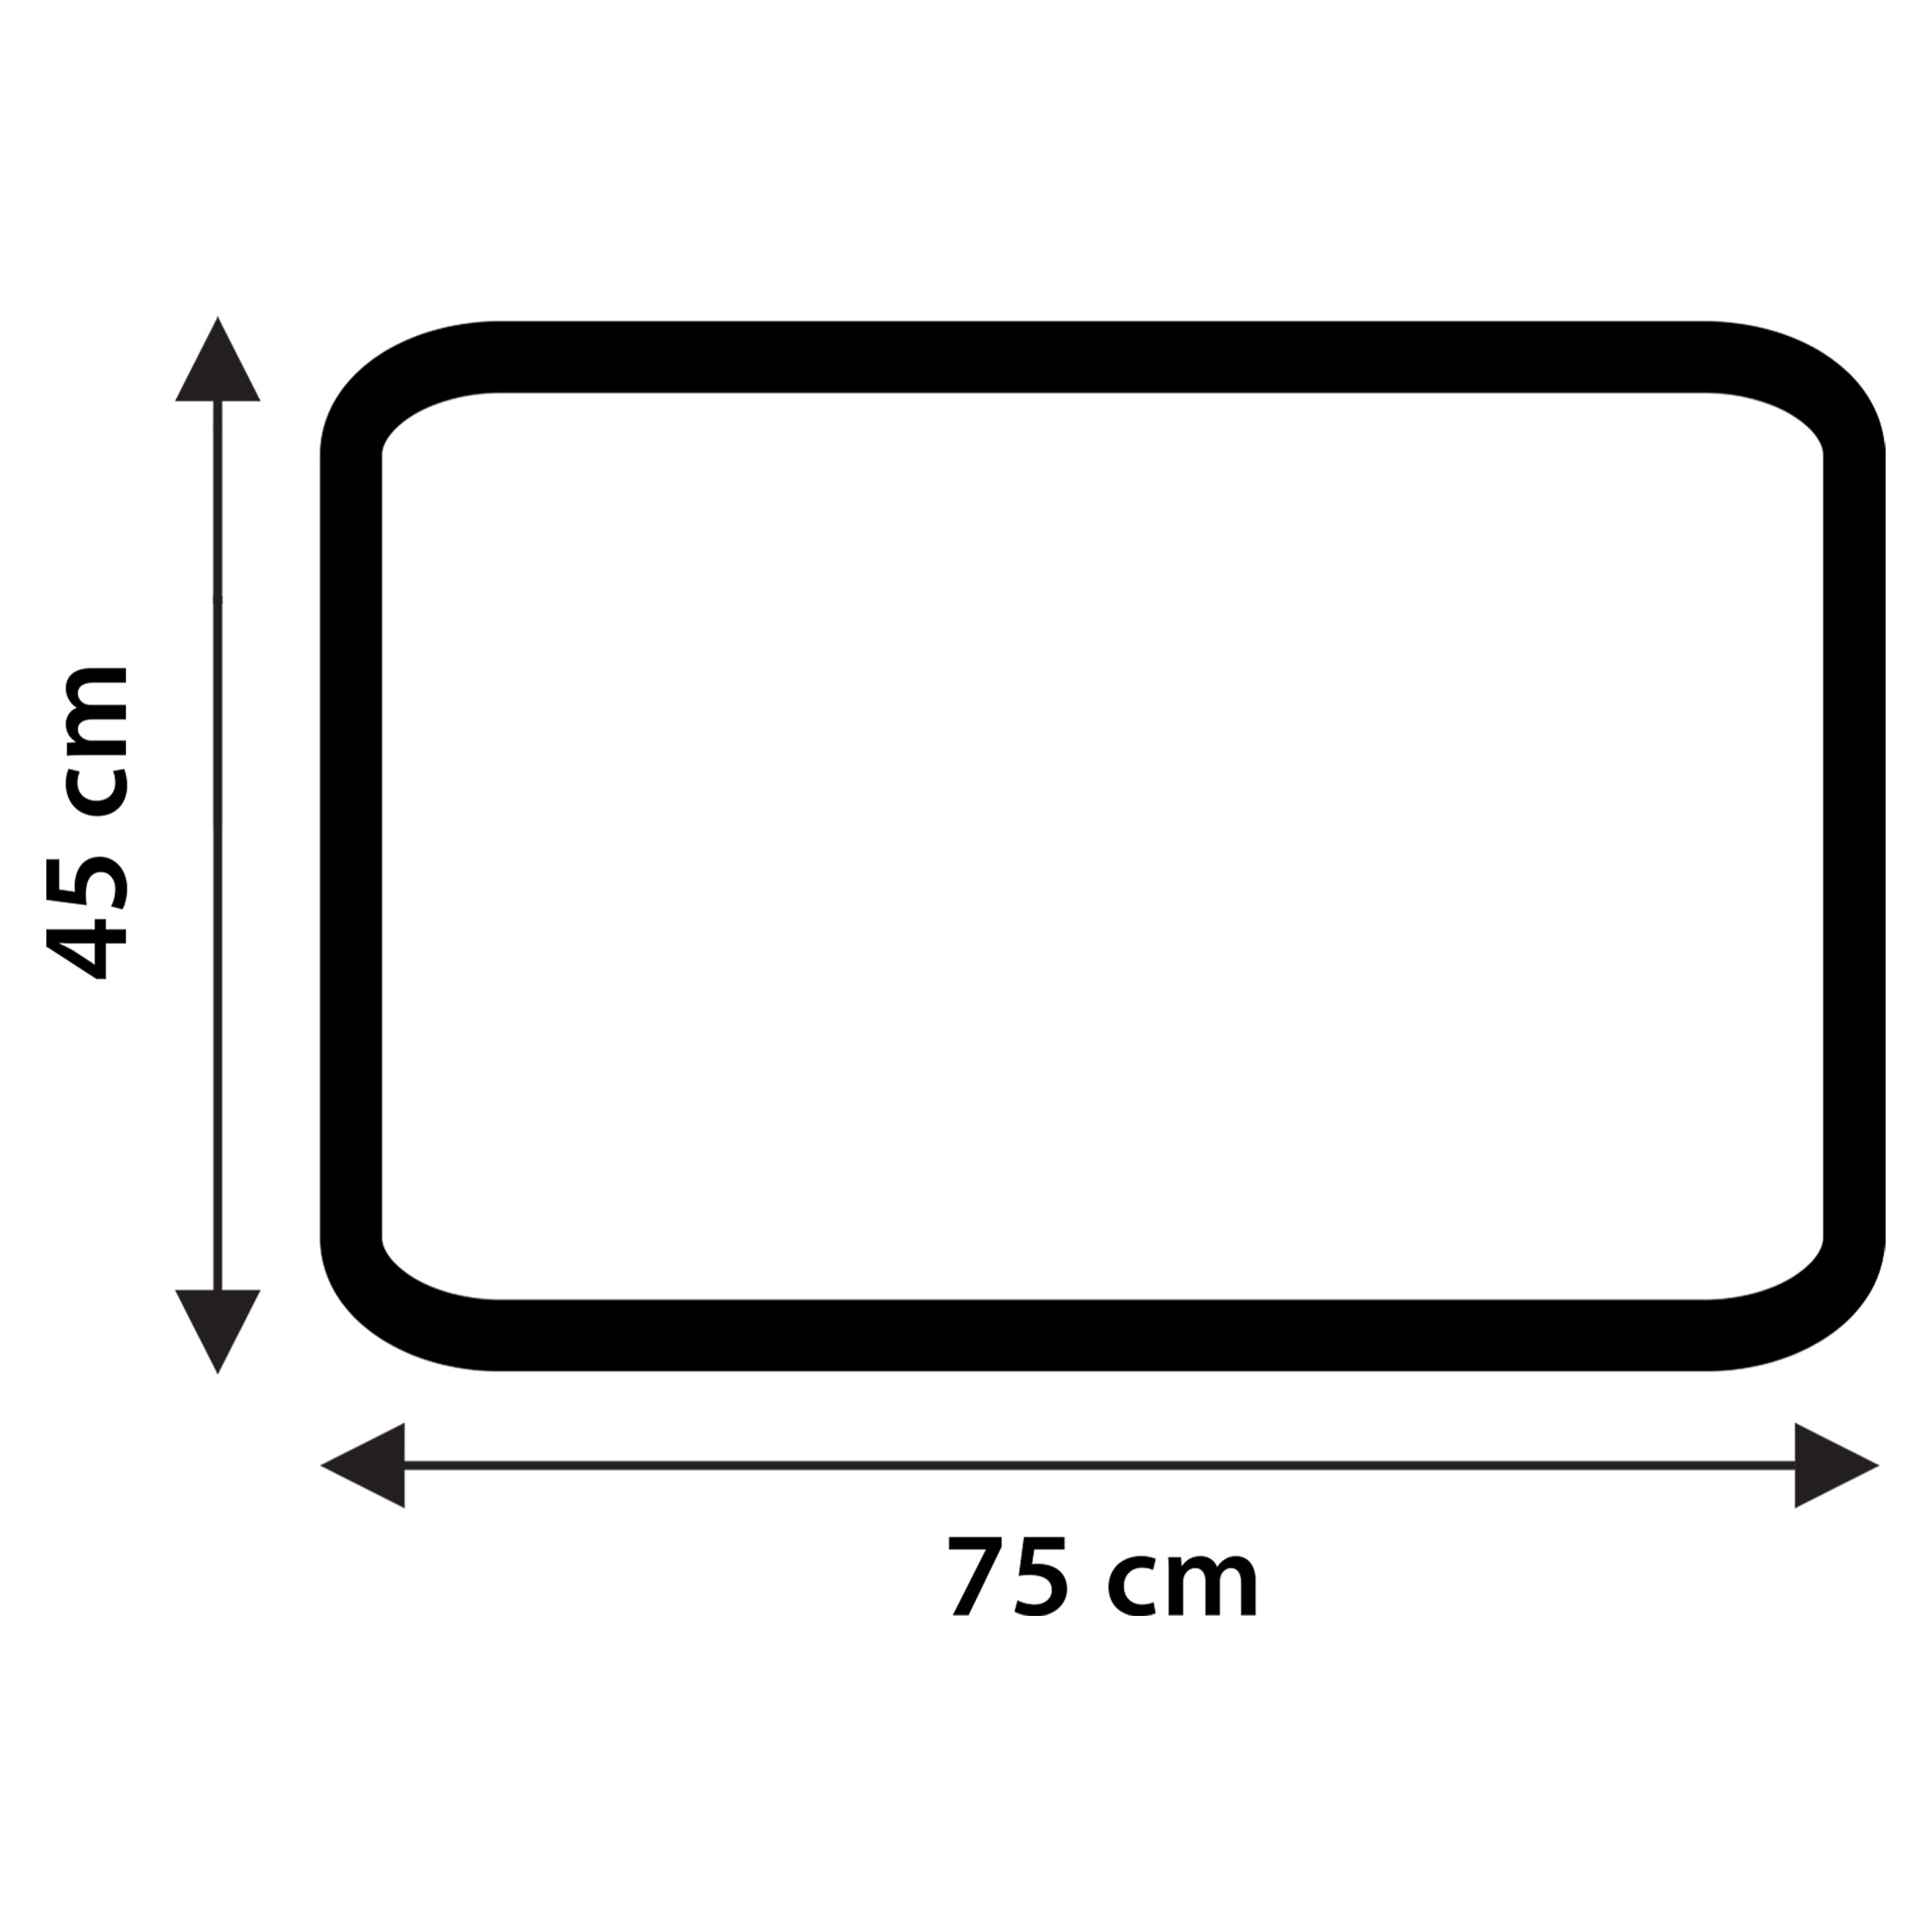 Differnz Stripes badmat geschikt voor vloerverwarming 100% katoen 45 x 75 cm grijs